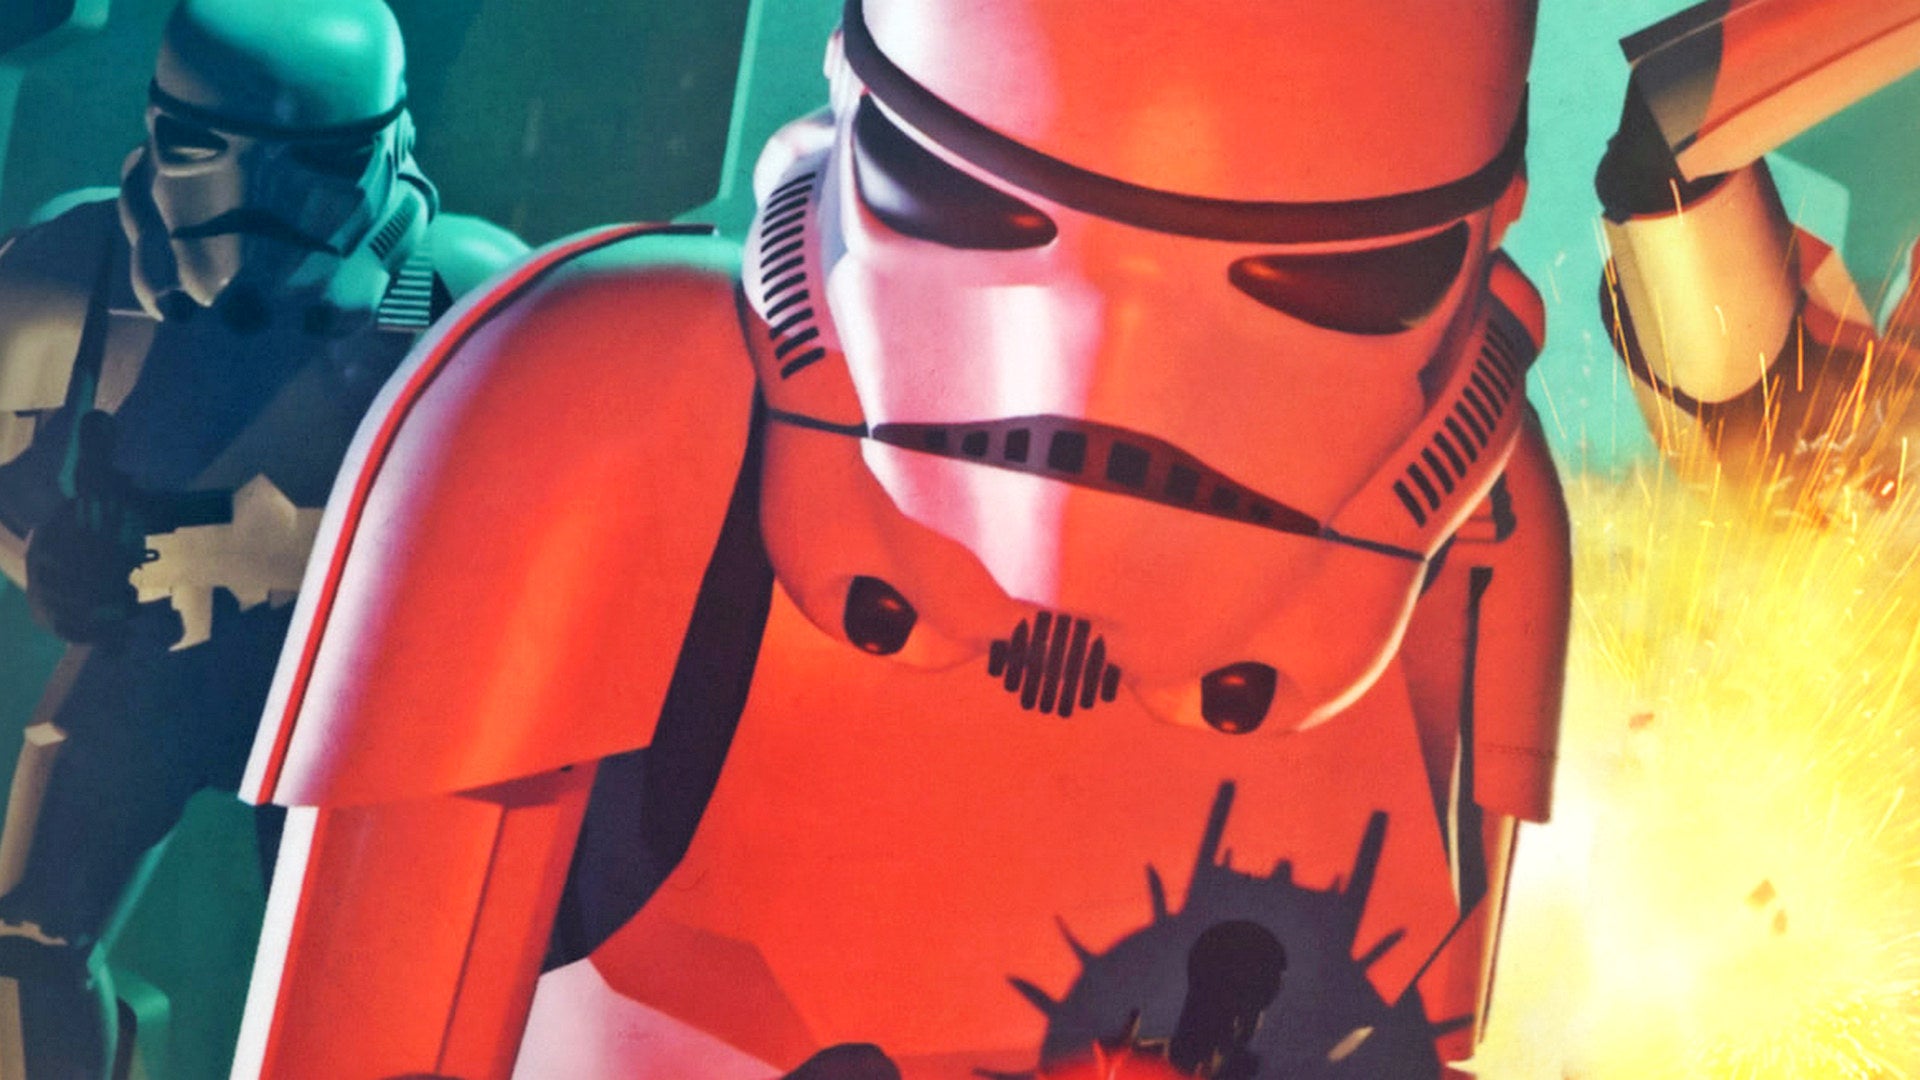 Bilder zu Star Wars: Dark Forces: Mögliche Hinweise auf ein Remaster des Klassikers